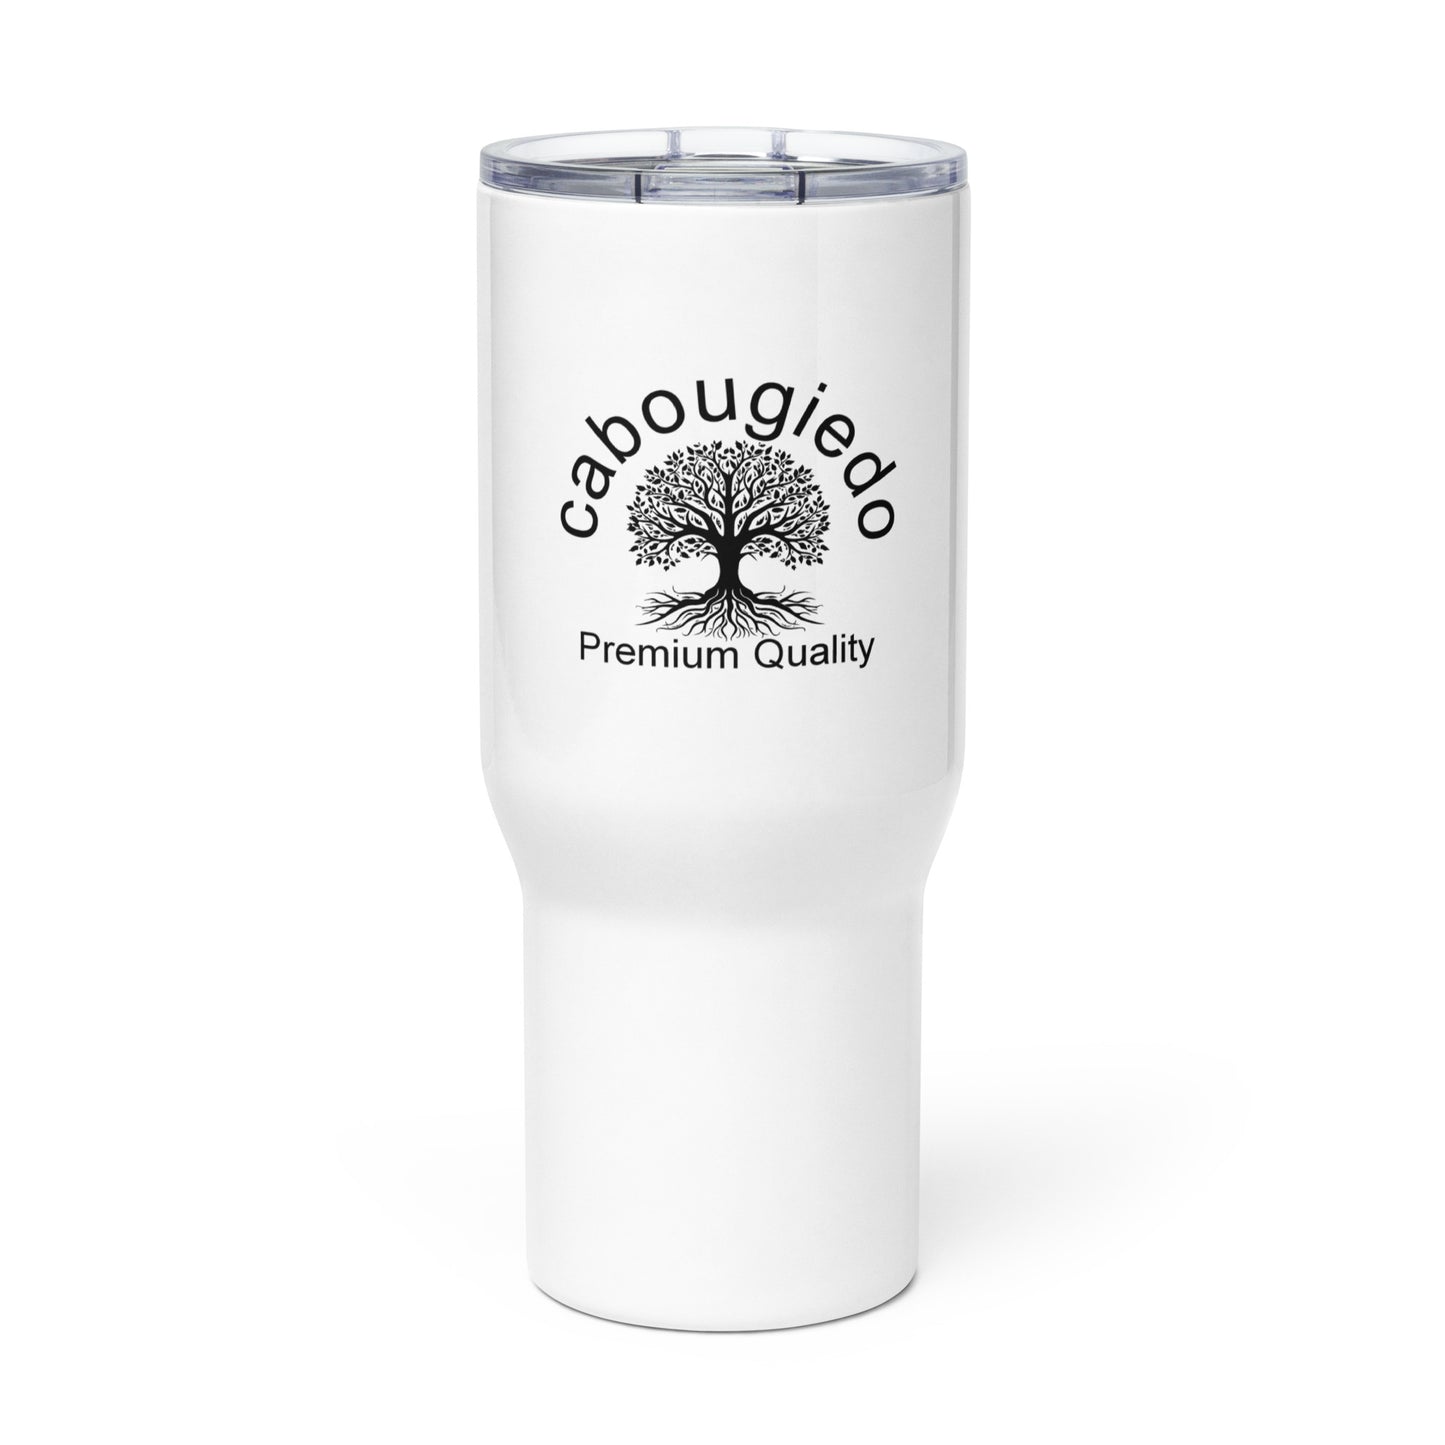 Travel mug with a handle - cabougiedo Premium Quality